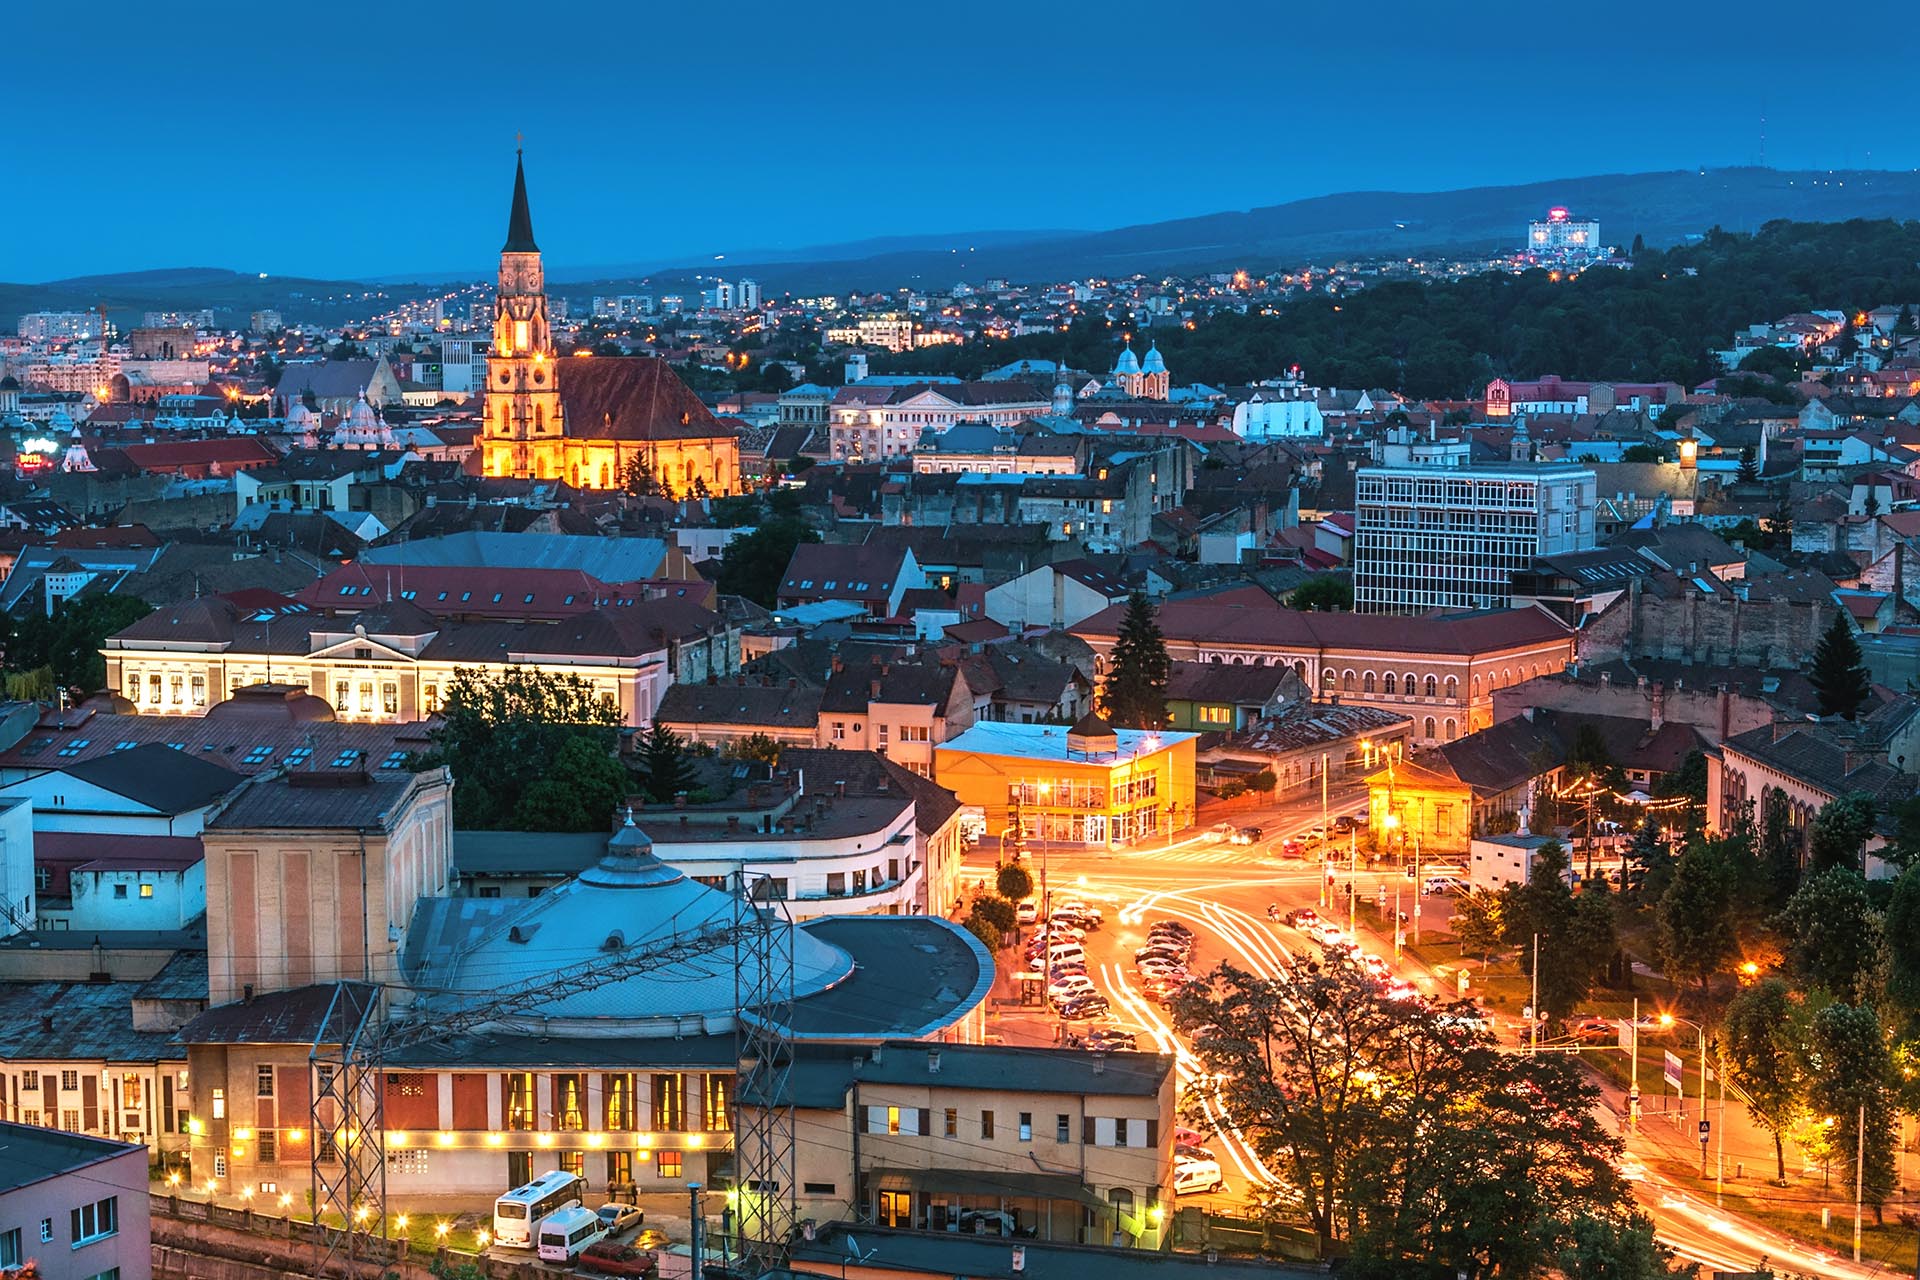 Old city of Cluj-Napoca, night scene